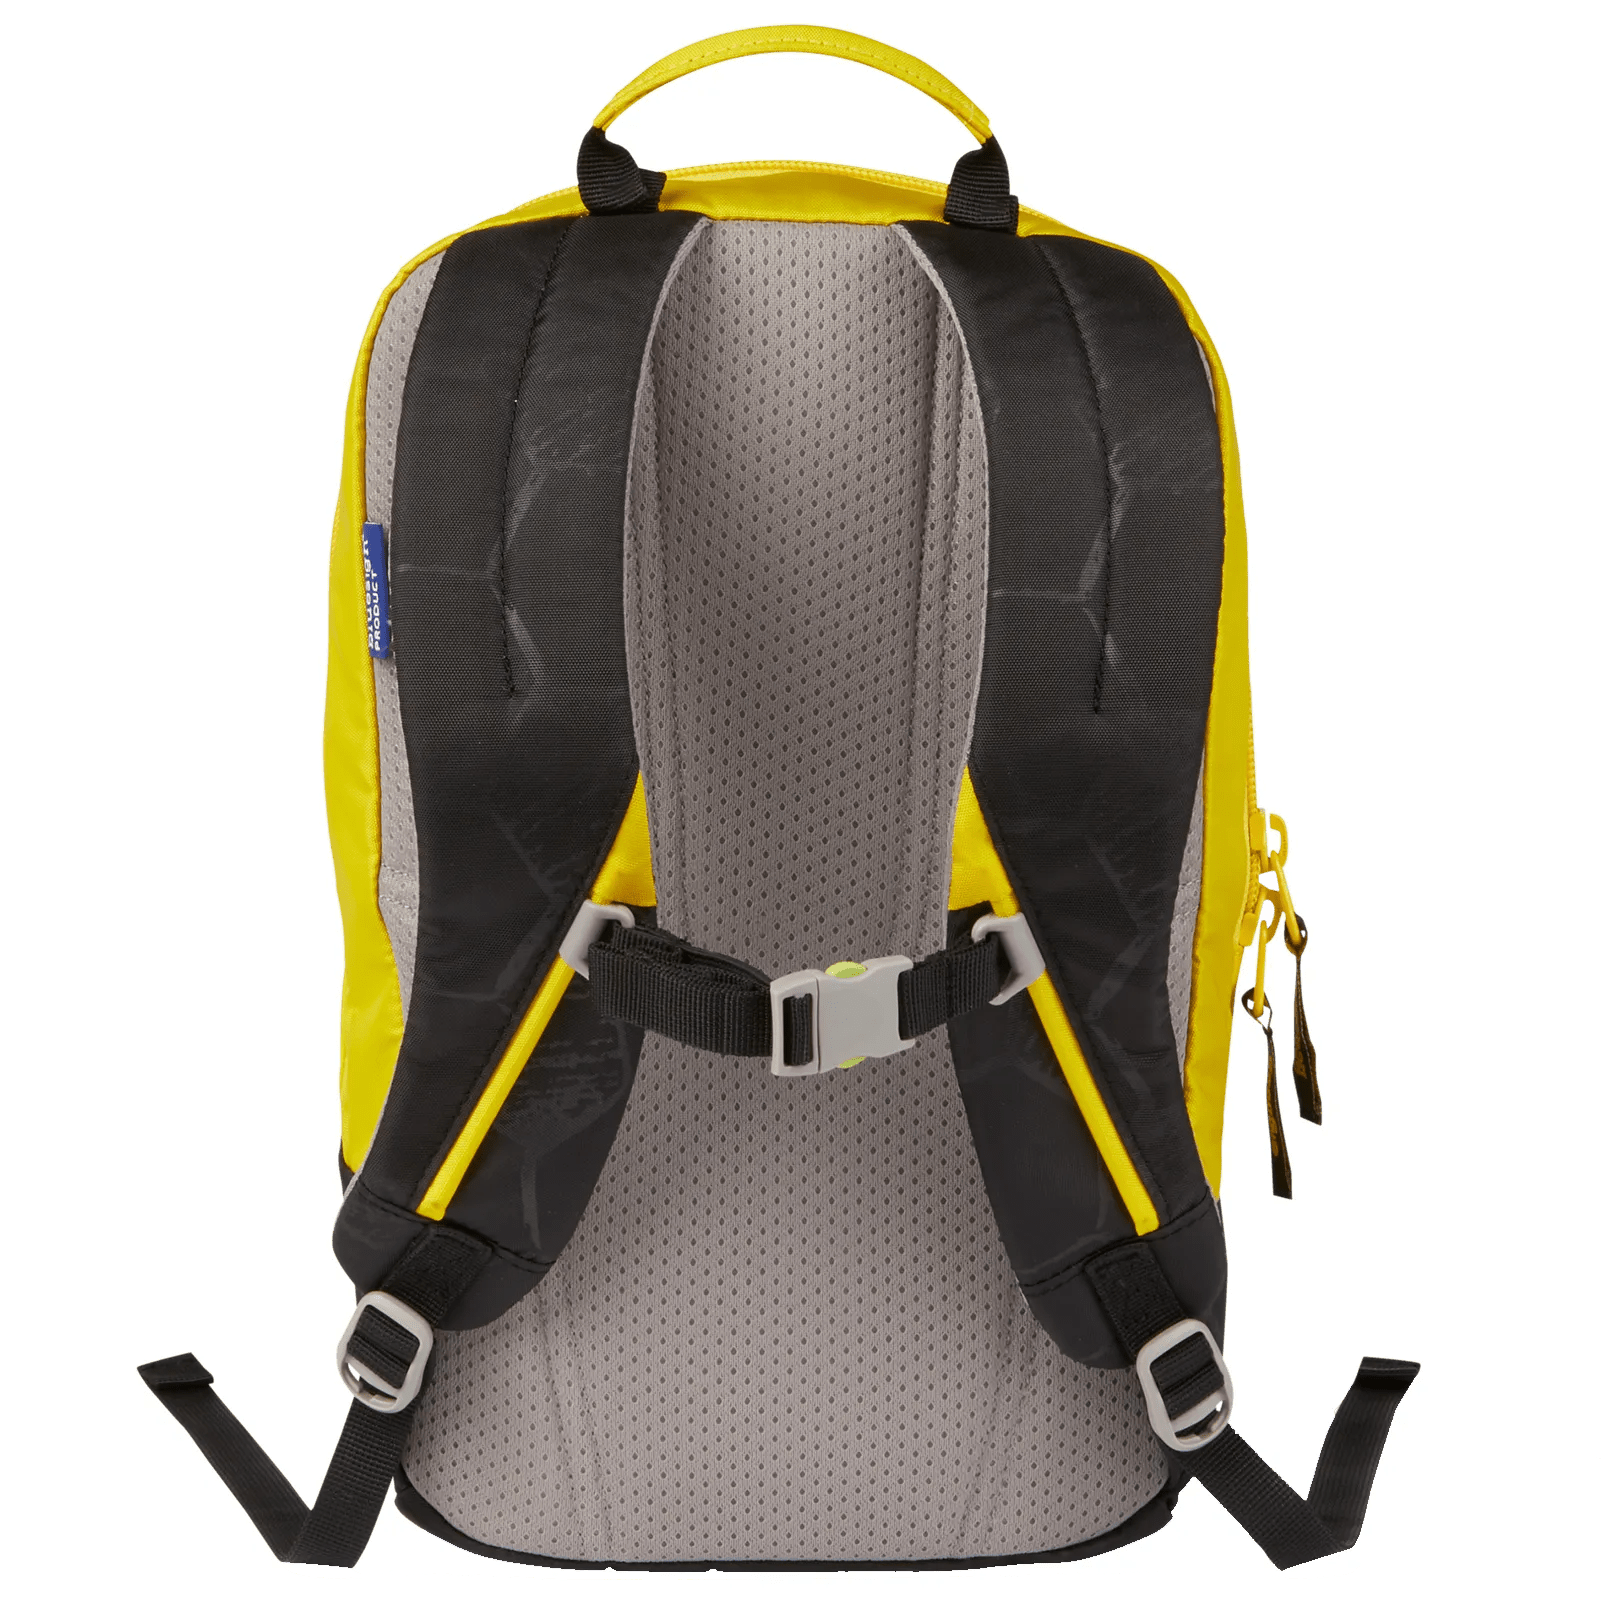 Ergobag Ease Small children's backpack 30 cm - Domstuermbaer